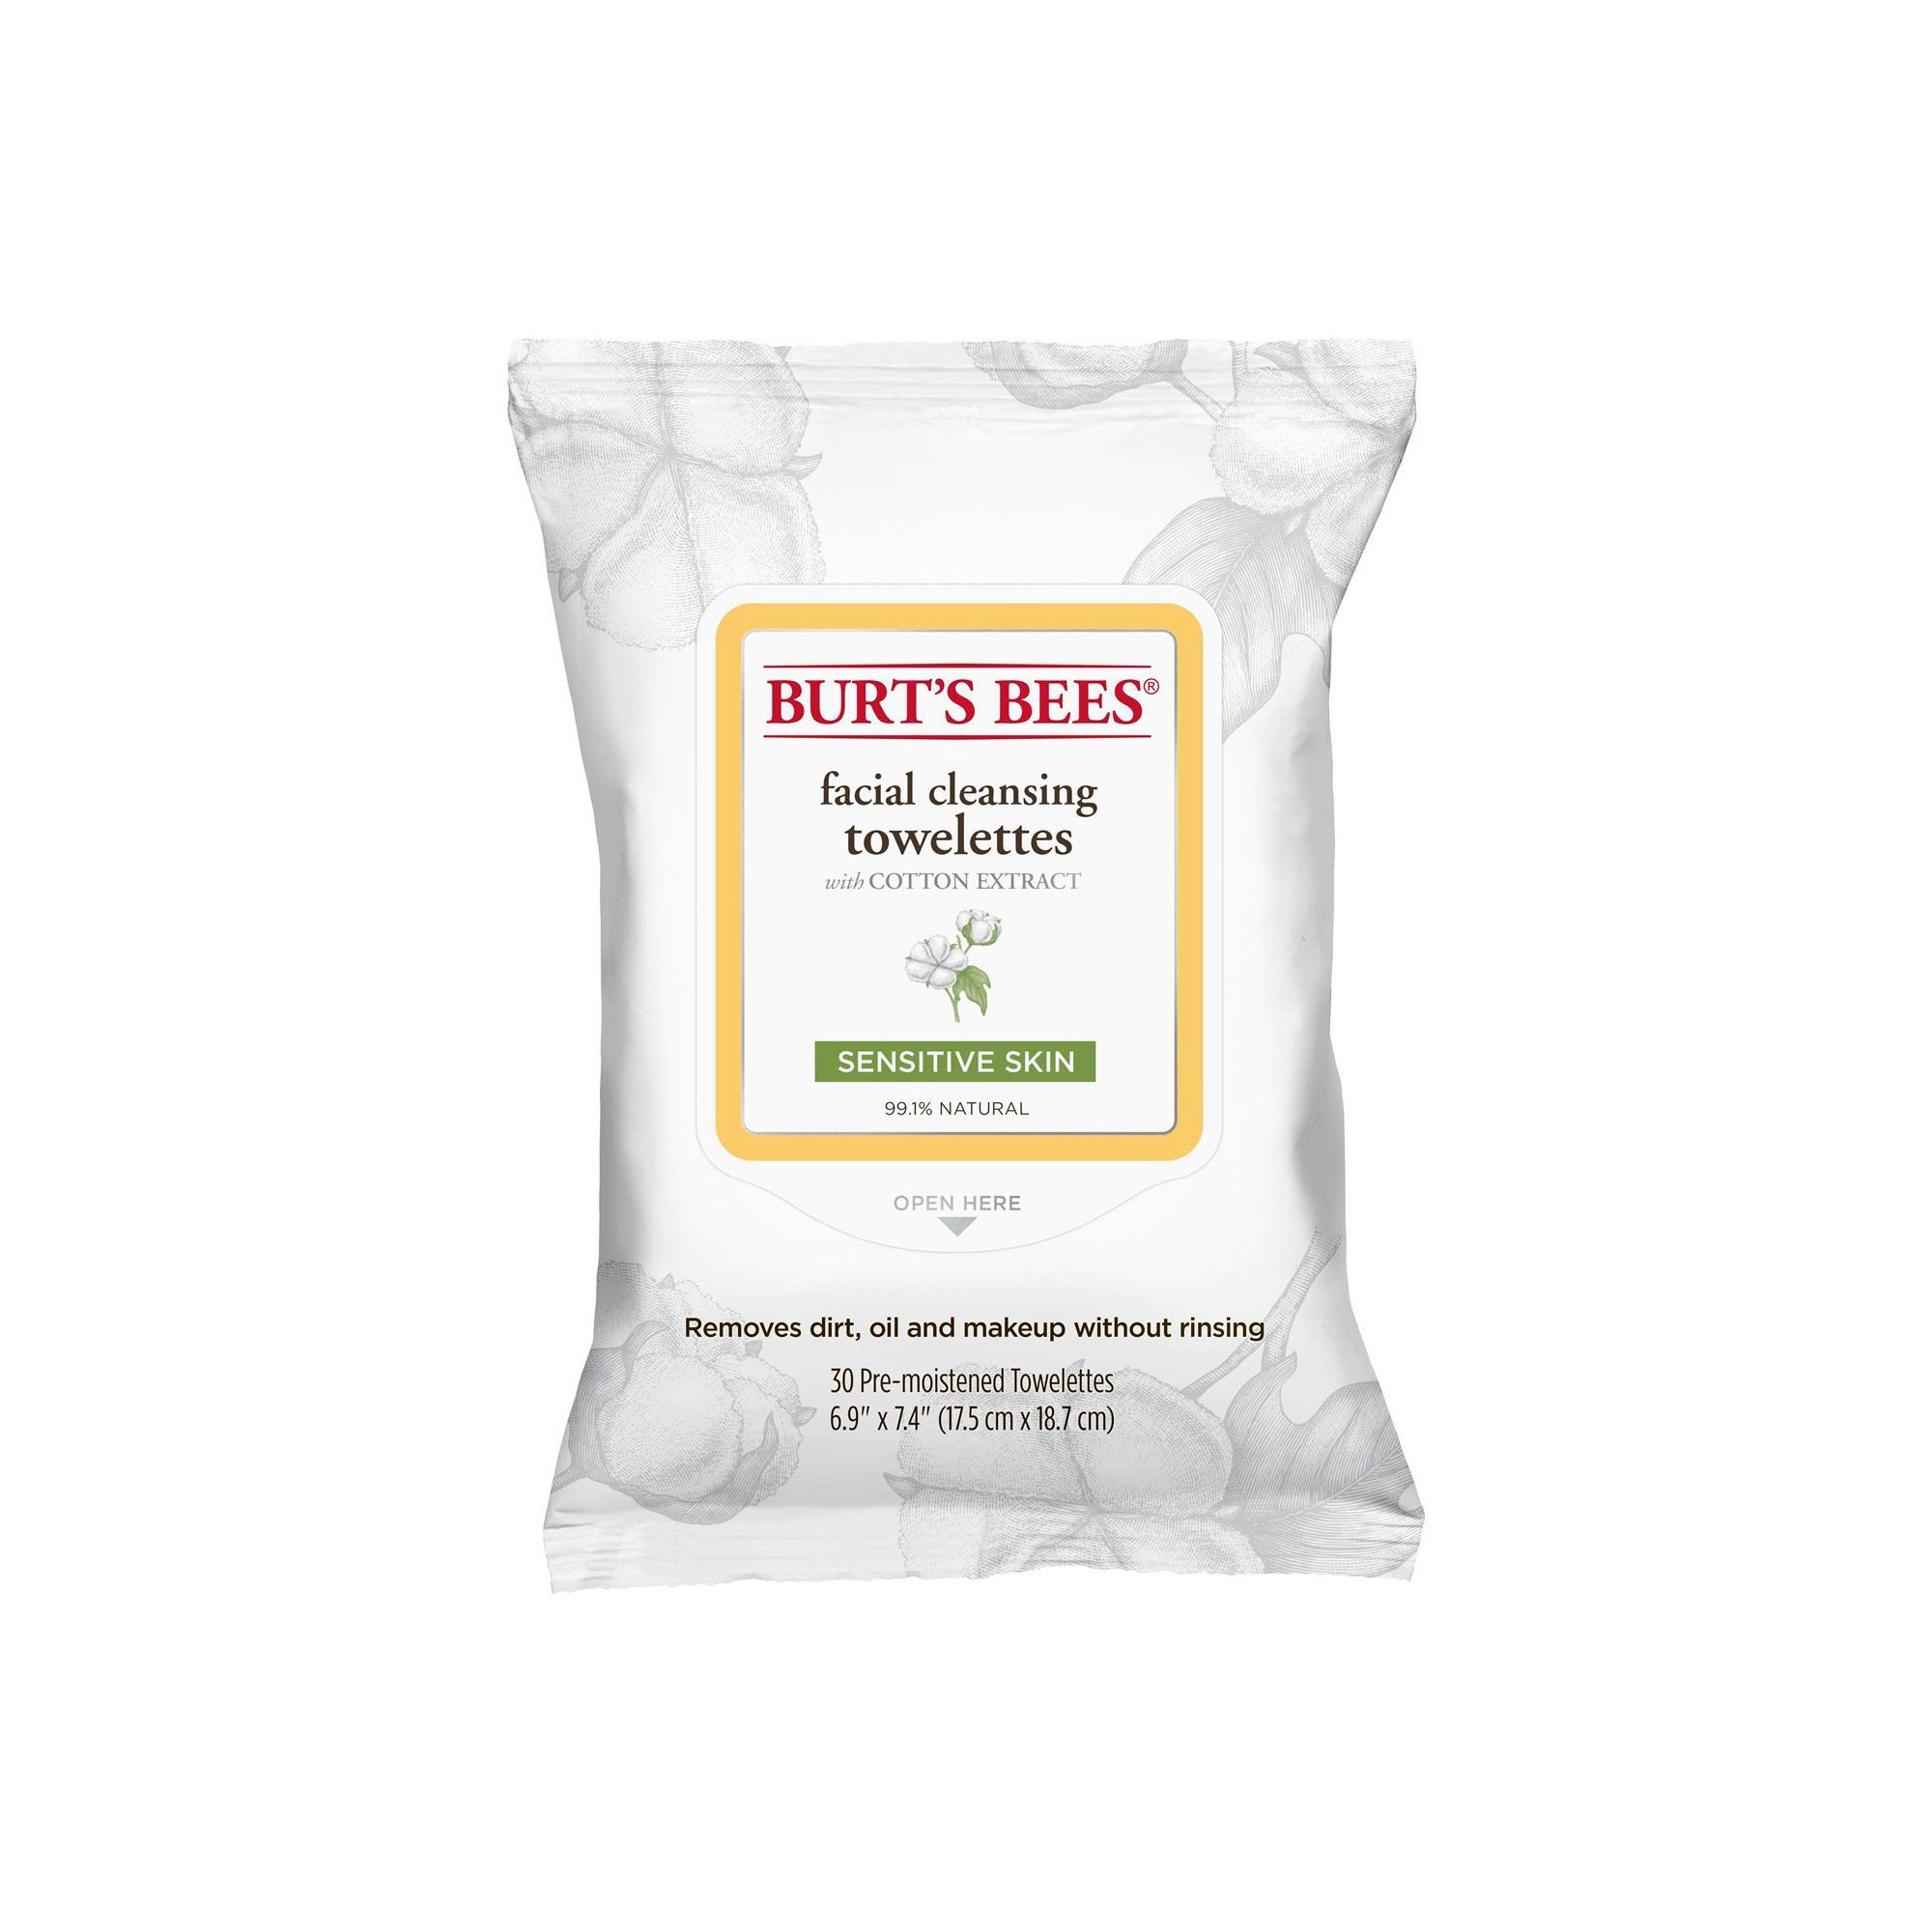 Burt's Bees Cotton Extract Sensitive Facial Cleansing Towelettes - 30 ct, Sensitive Cotton Extract